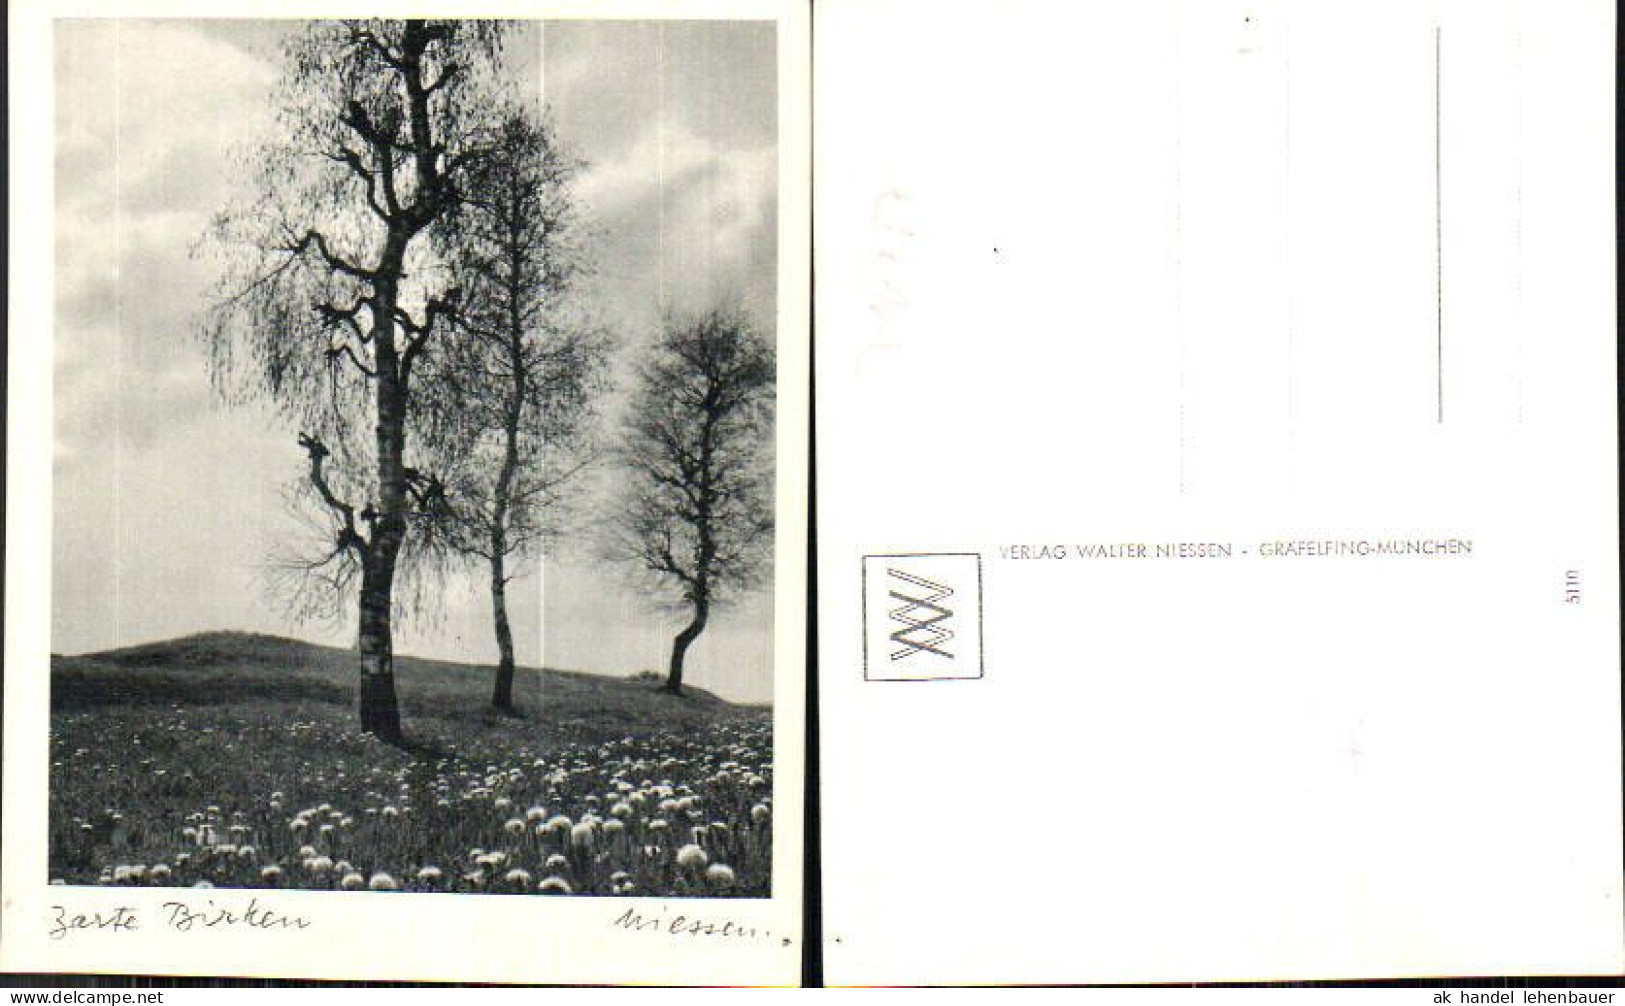 716487 Verlag Walter Niessen Gräfelfing München Birken Bäume - Photographs